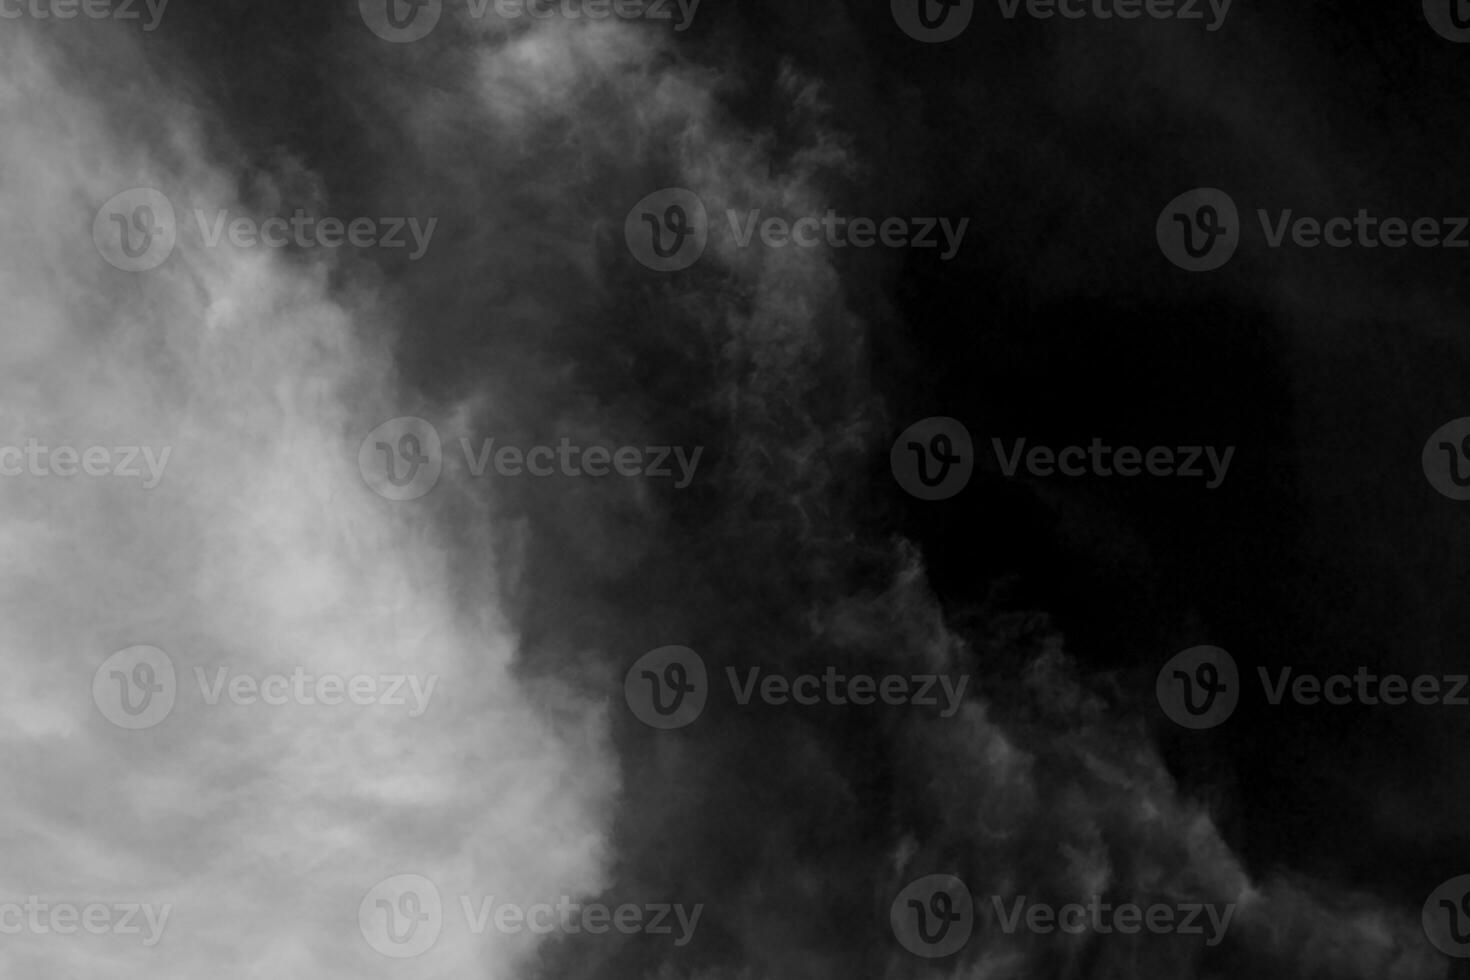 texturerad moln, abstrakt svart, isolerad på svart bakgrund foto